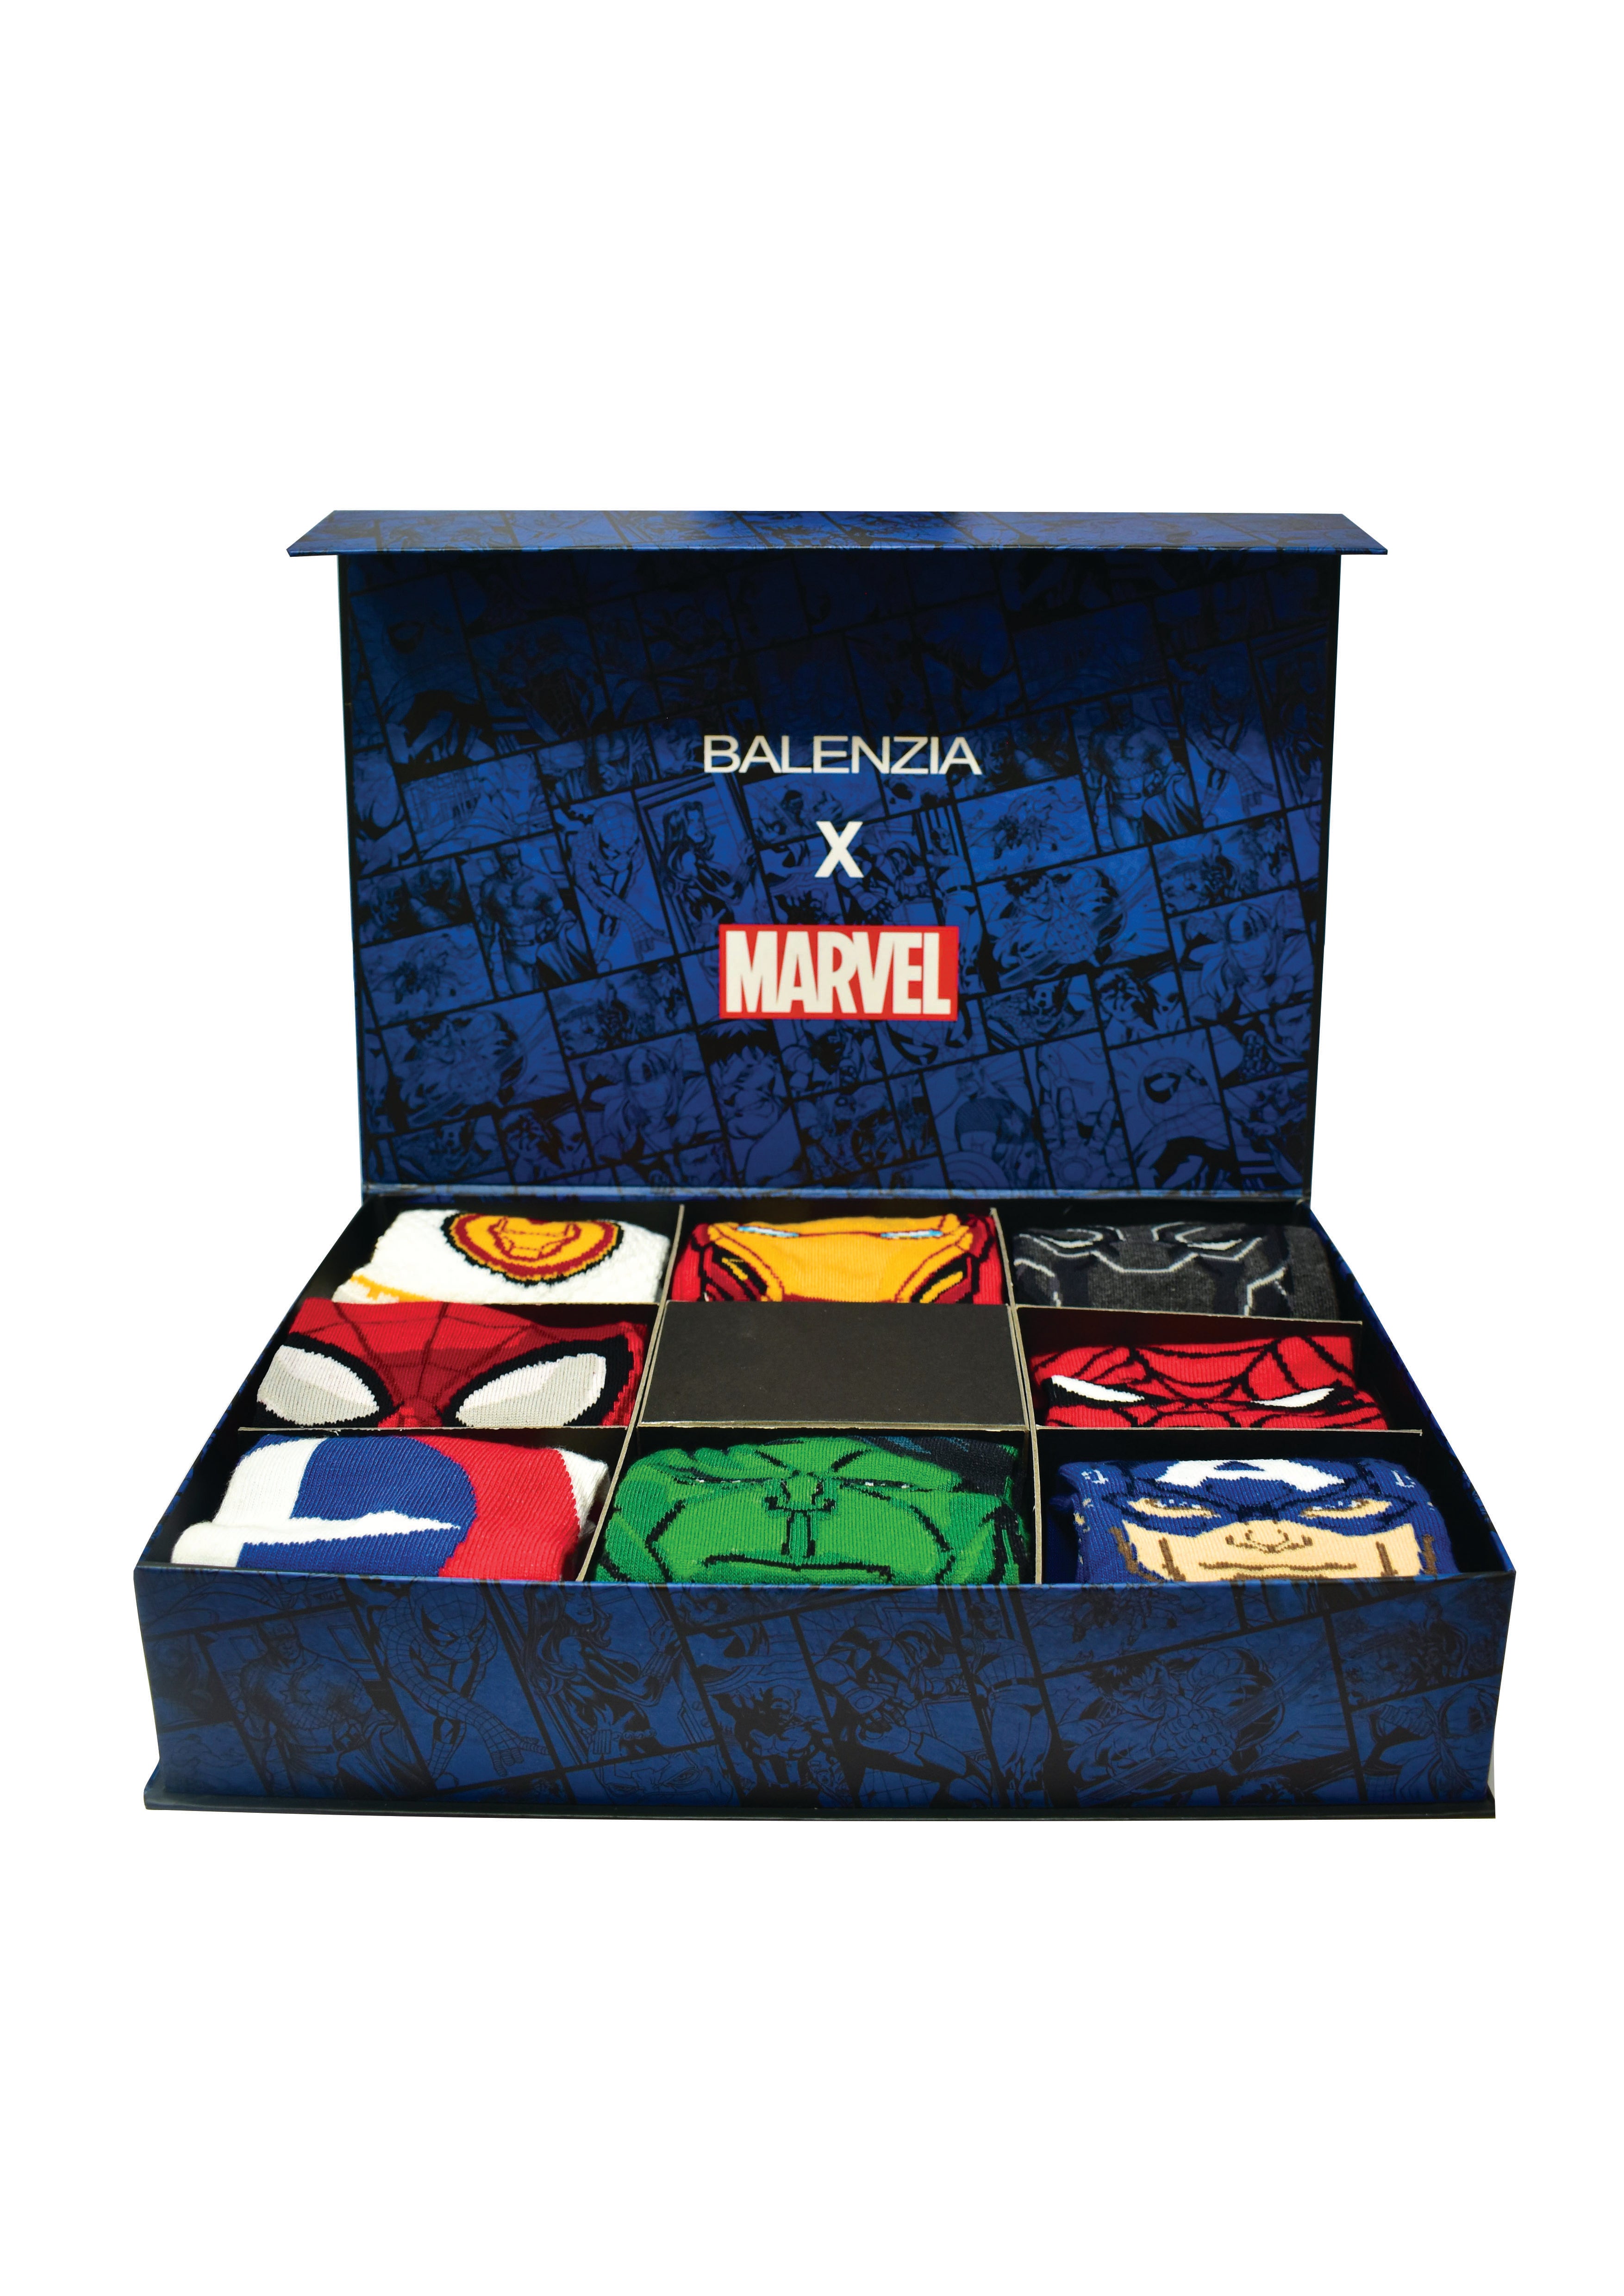 Marvel - Avengers Adult Socks 3 Pack (Size: 39-45), Men's